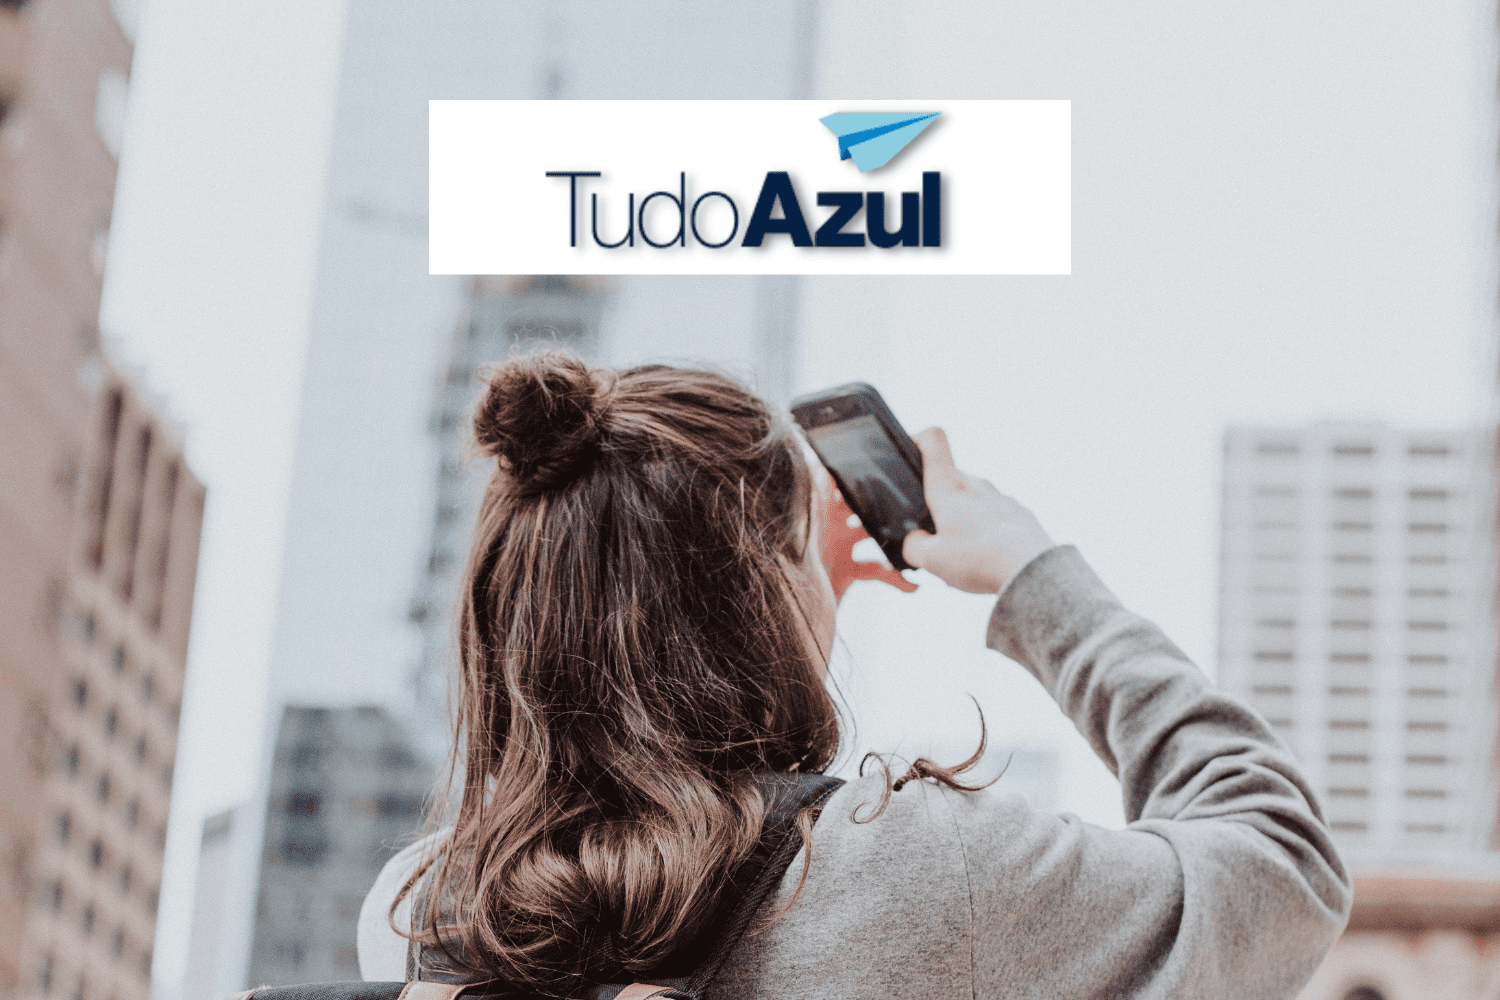 mulher tirando foto com celular e logo TudoAzul Upgrade no Clube TudoAzul